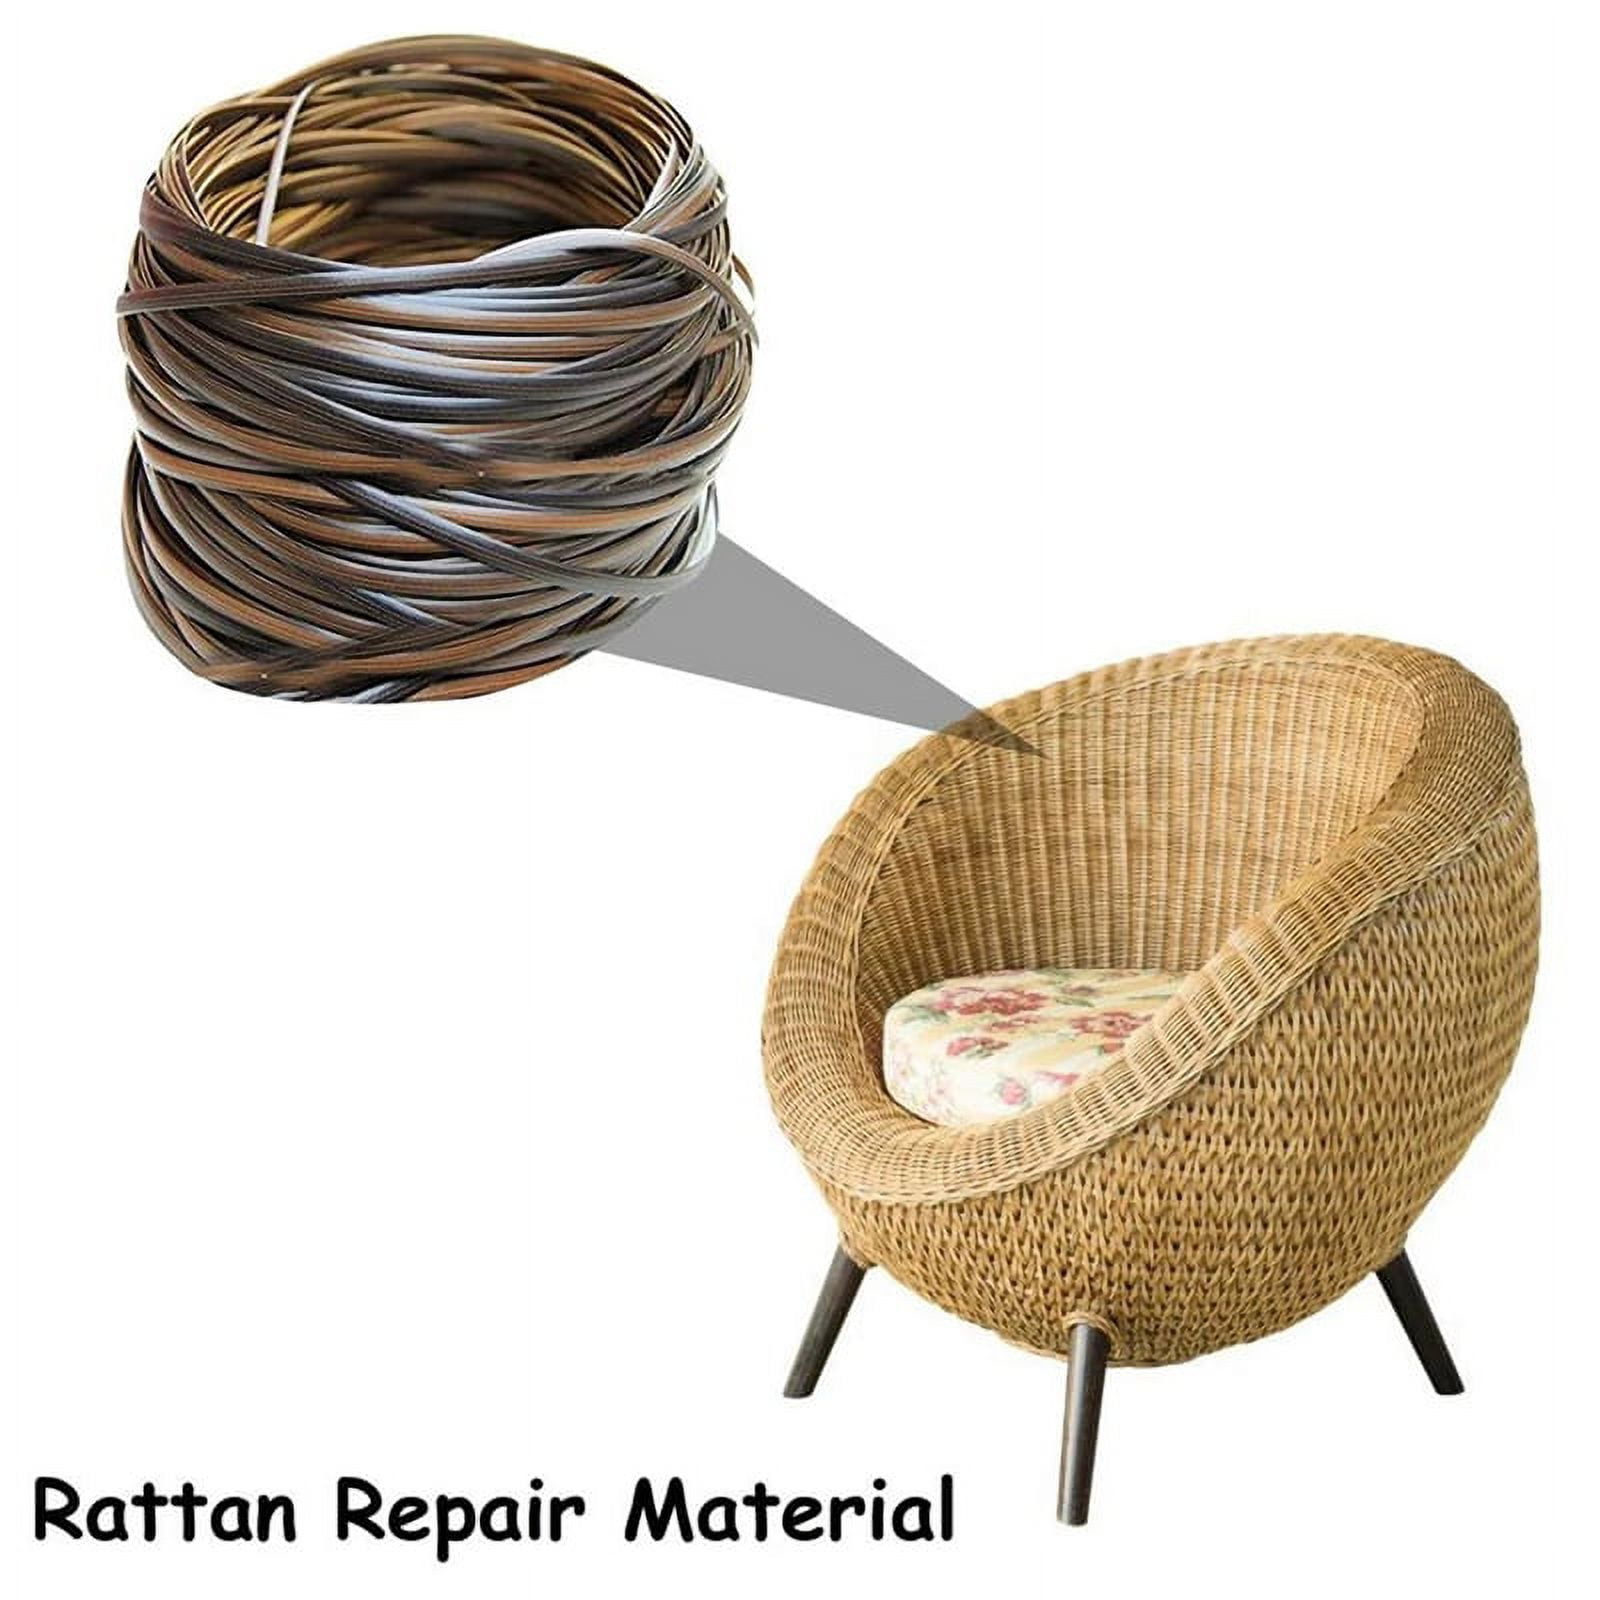 MERRYHAPY 1 Roll Rattan Weave Material Rattan Material Basket Weaving Reed  Basket Weaving Supplies Rattan Furniture Repair Material Kit Chairs